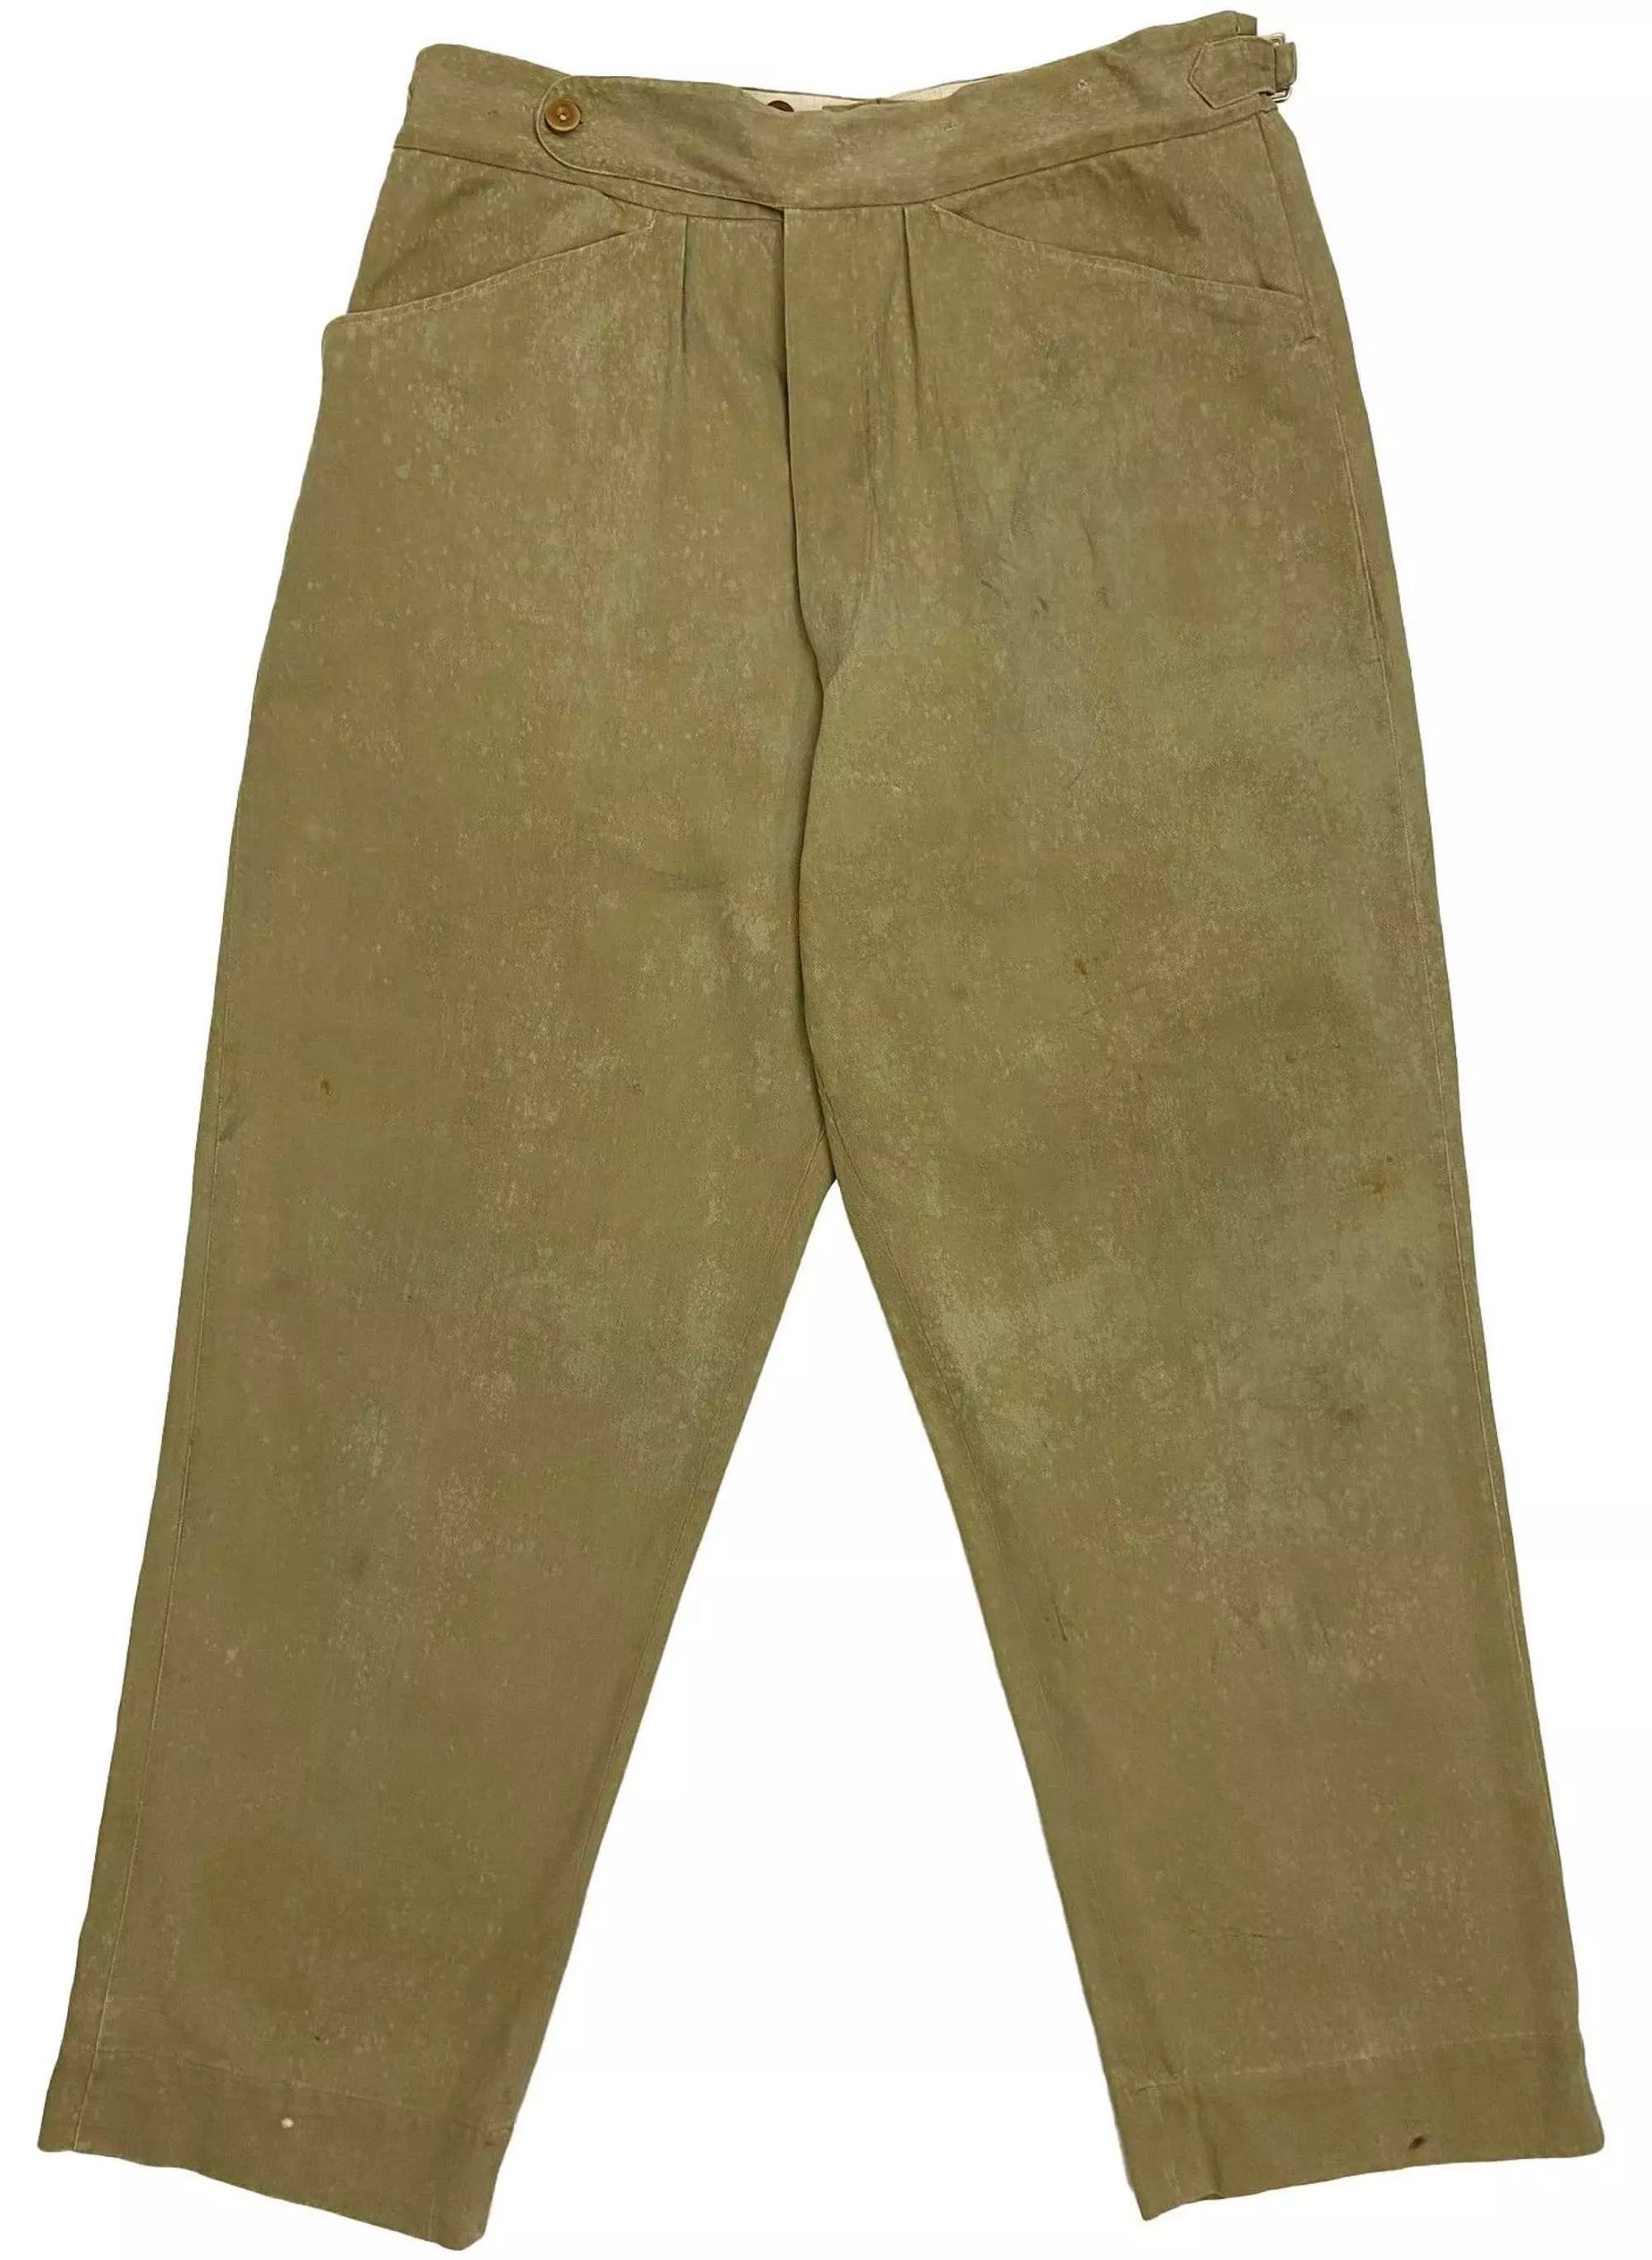 Original 1940s British Army Private Purchase Khaki Drill Trousers 